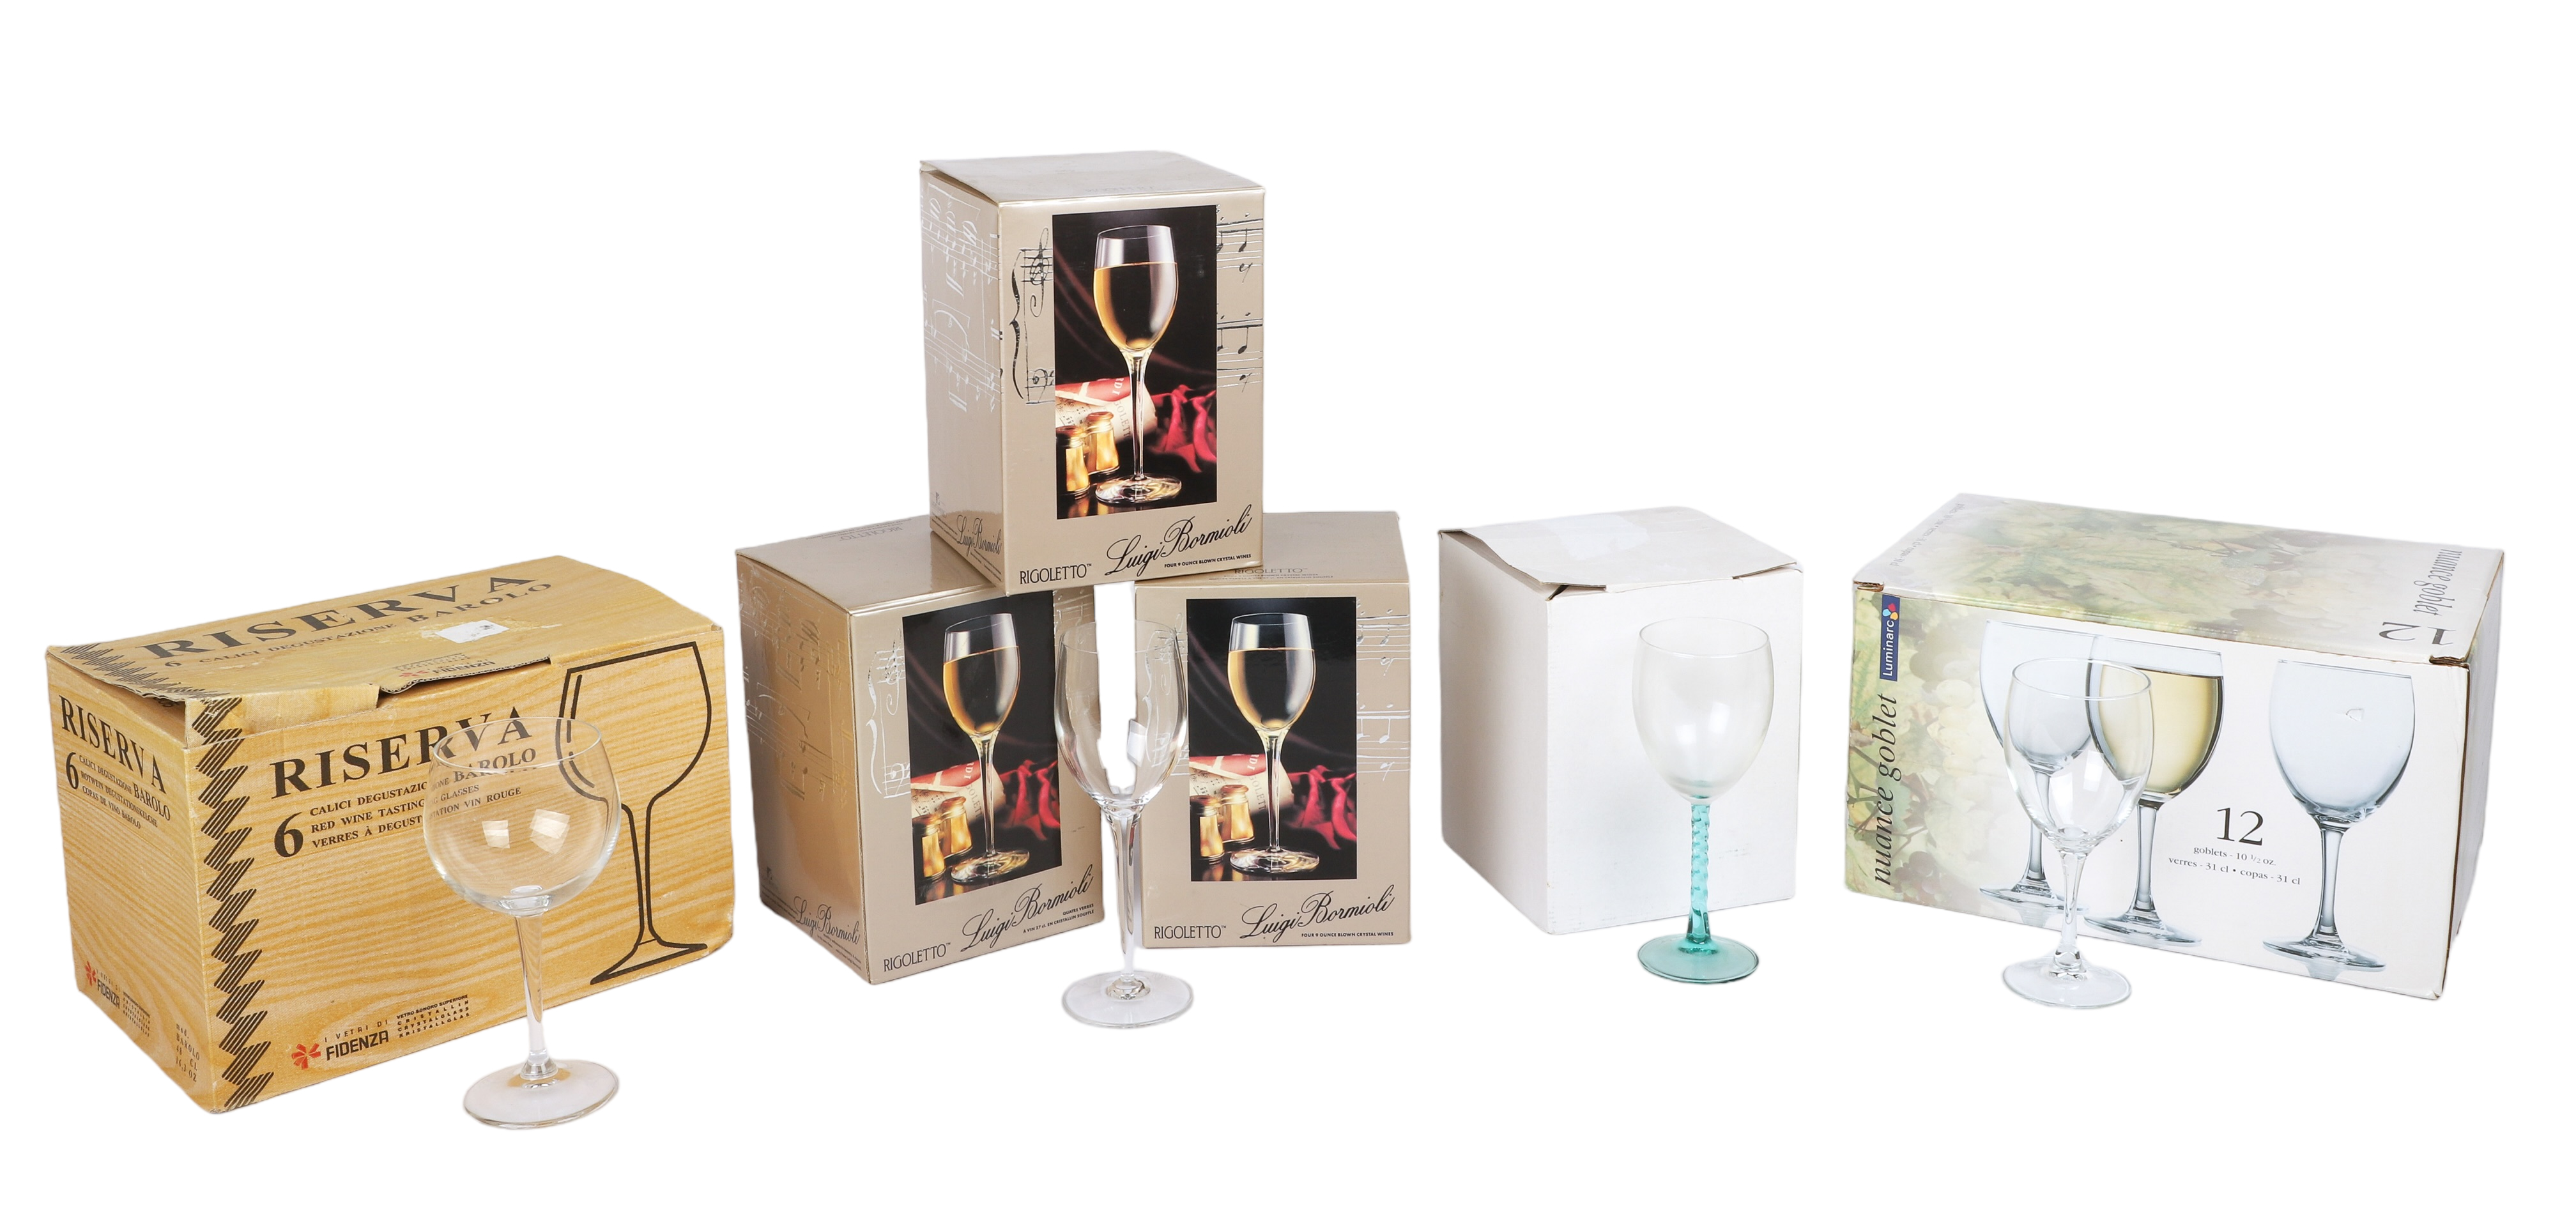 (34) Wine glasses, in original boxes,